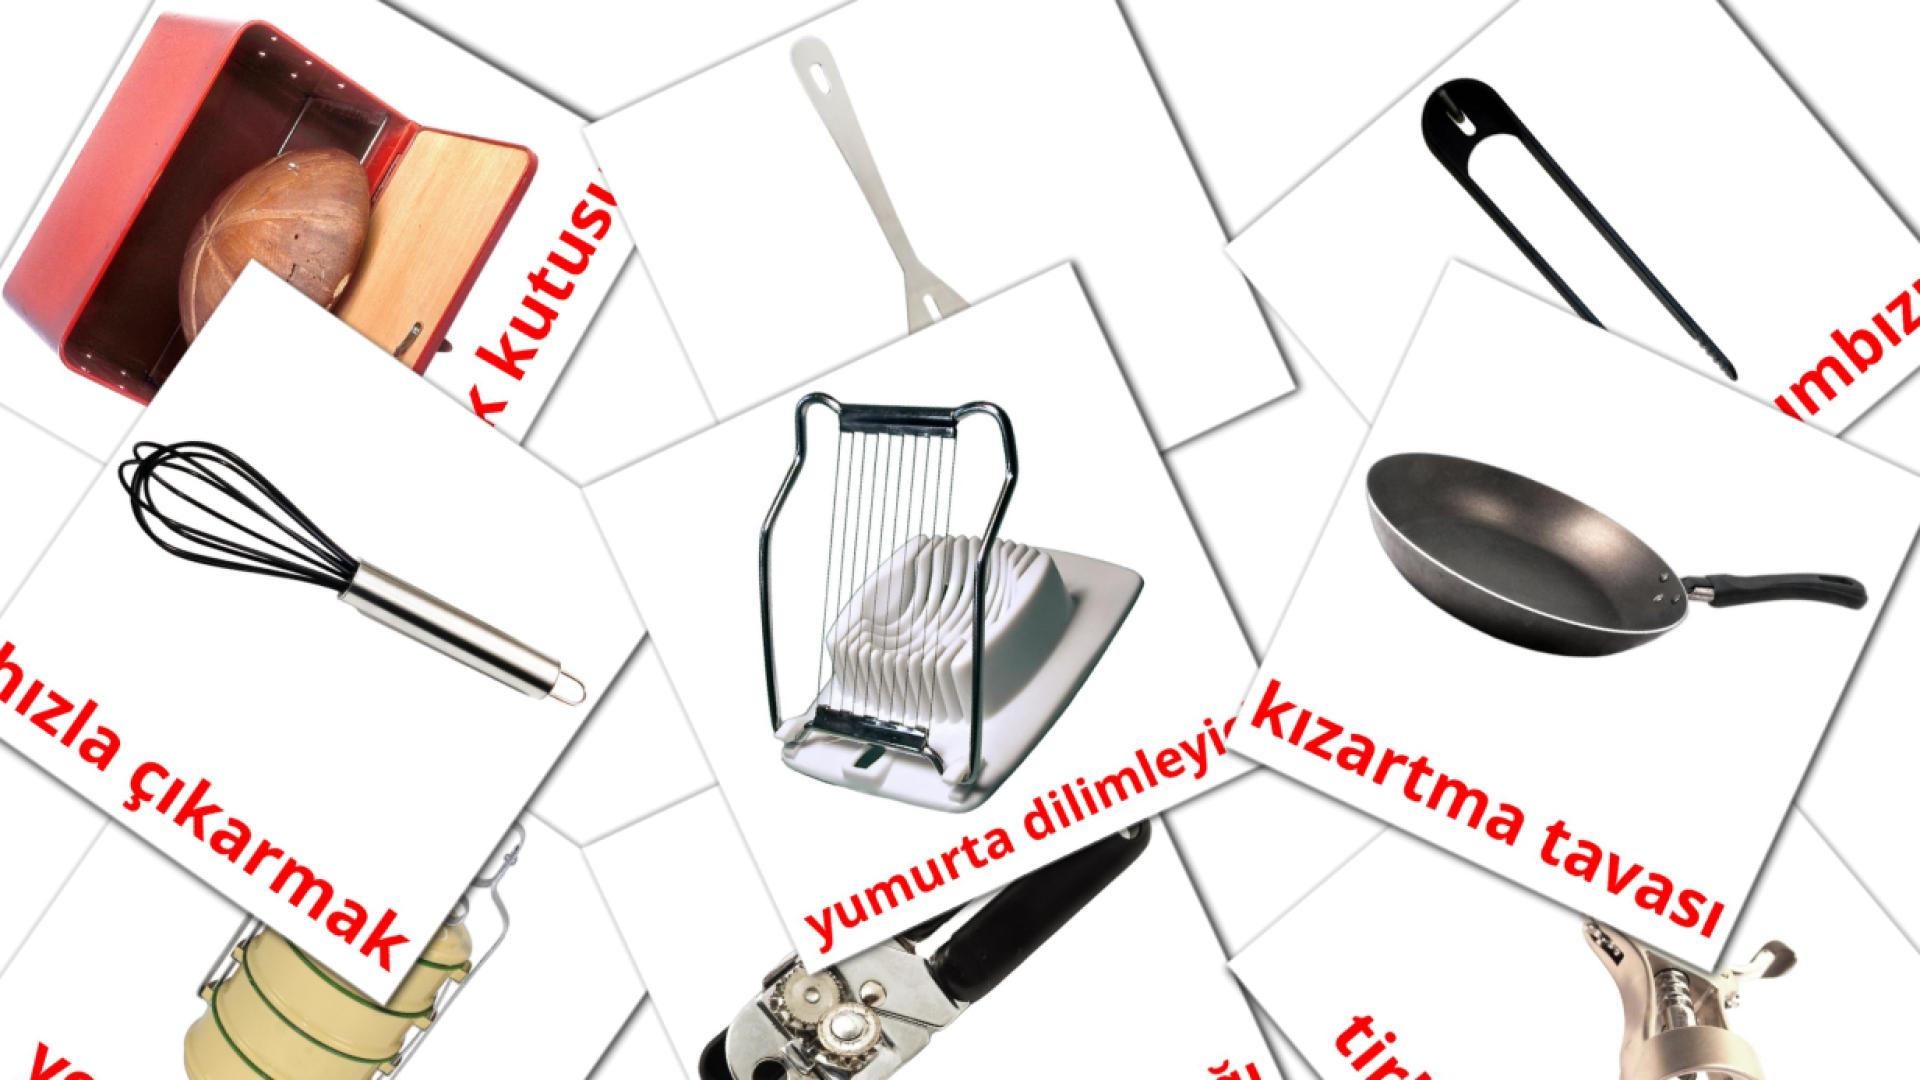 31 Flashcards de Kitchenware mutfak eşyaları